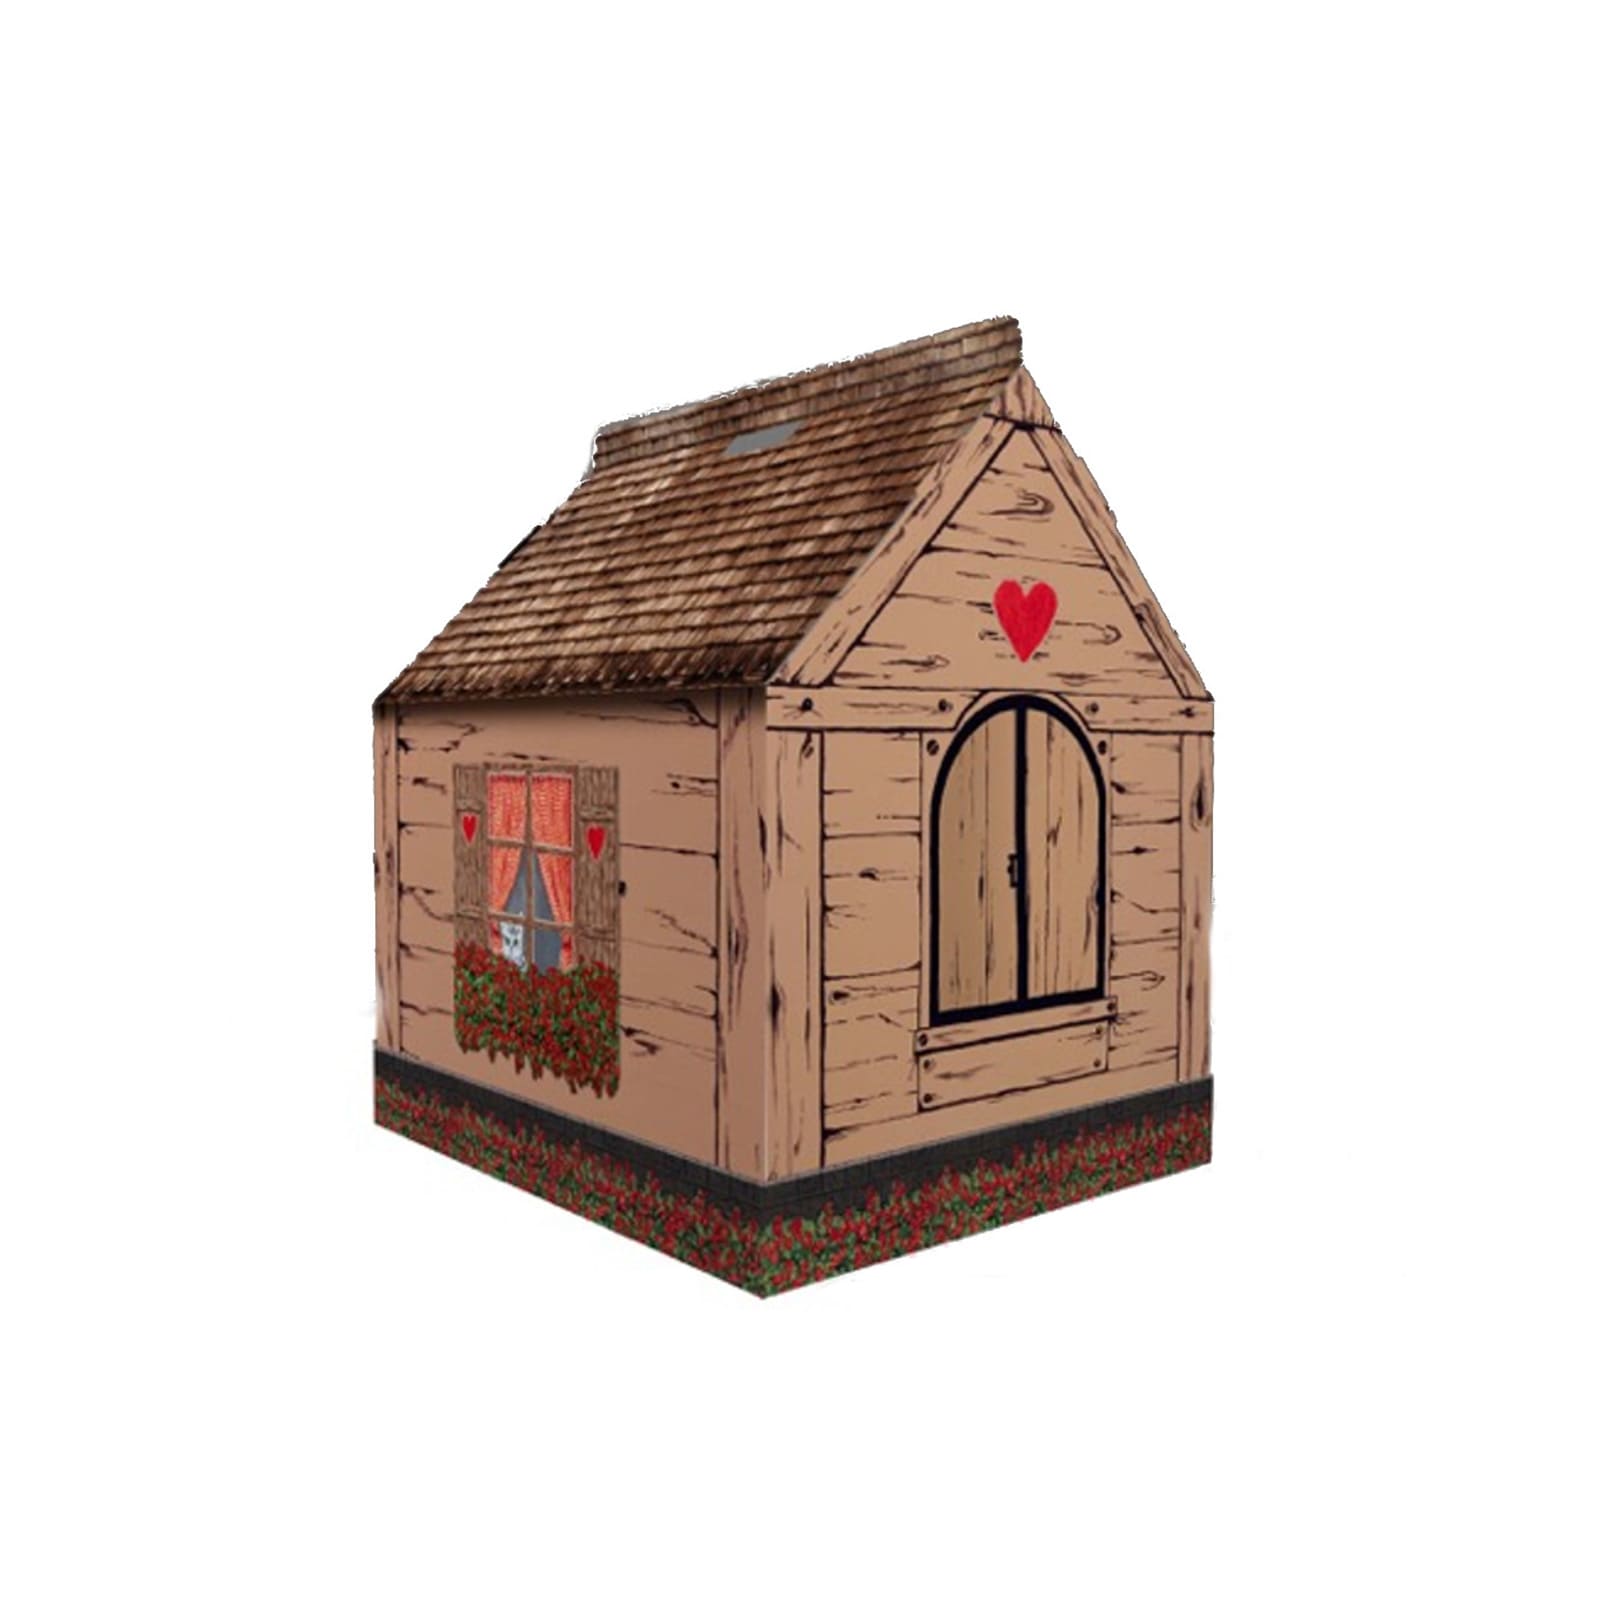 Hütte aus Pappe im Stil einer Holzhütte